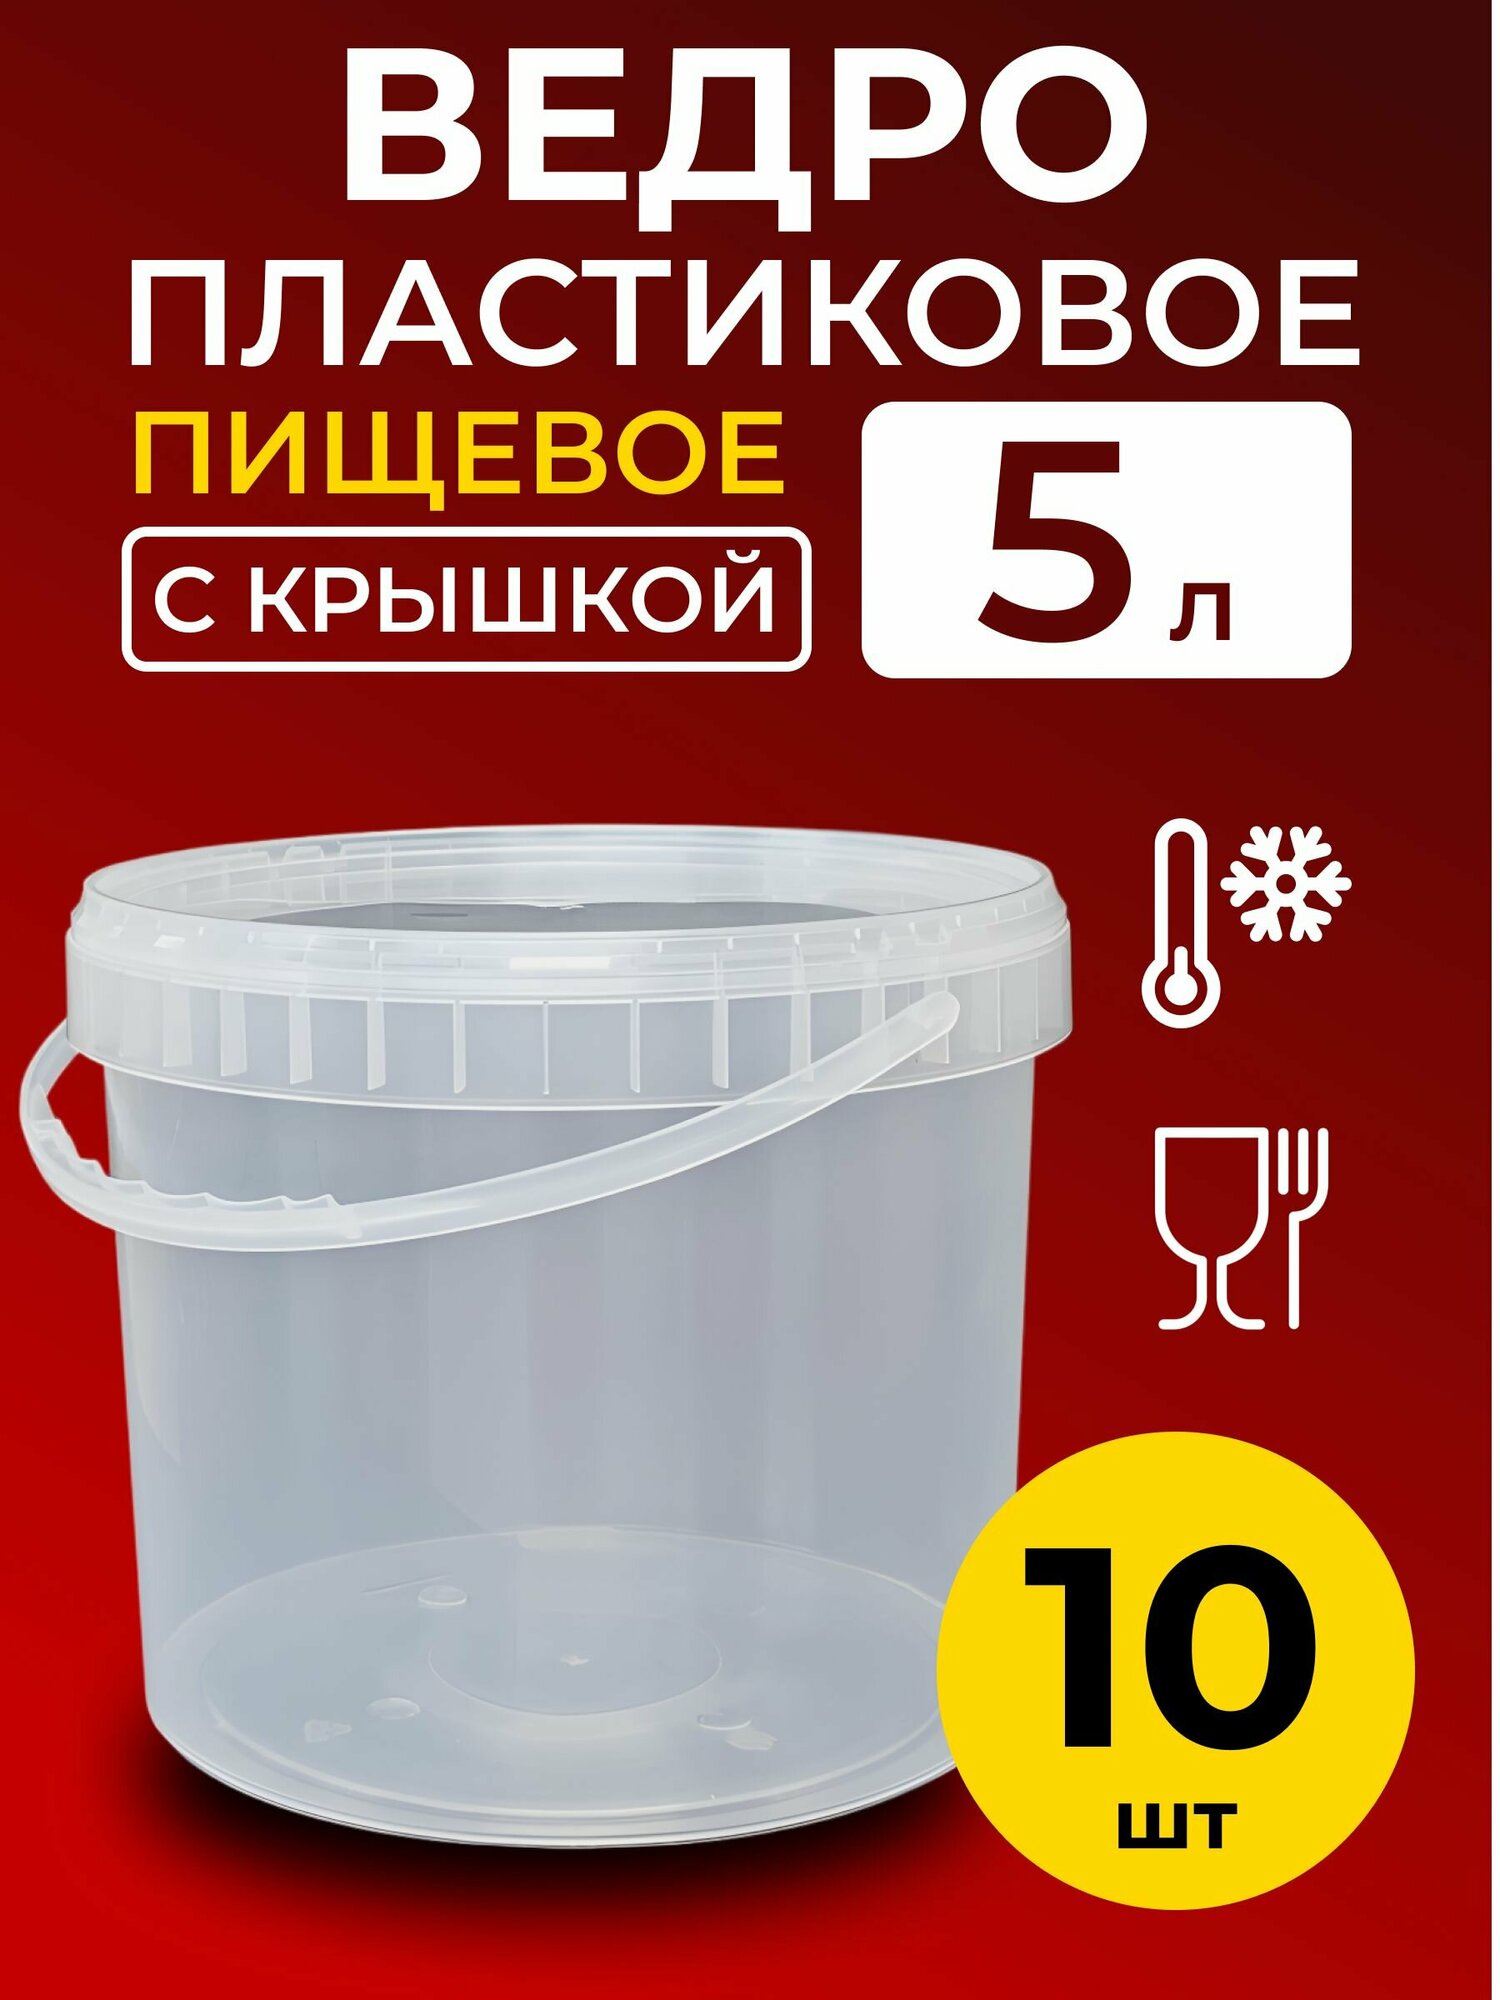 Ведро пластиковое пищевое с крышкой 5л (прозрачное) 10 шт.